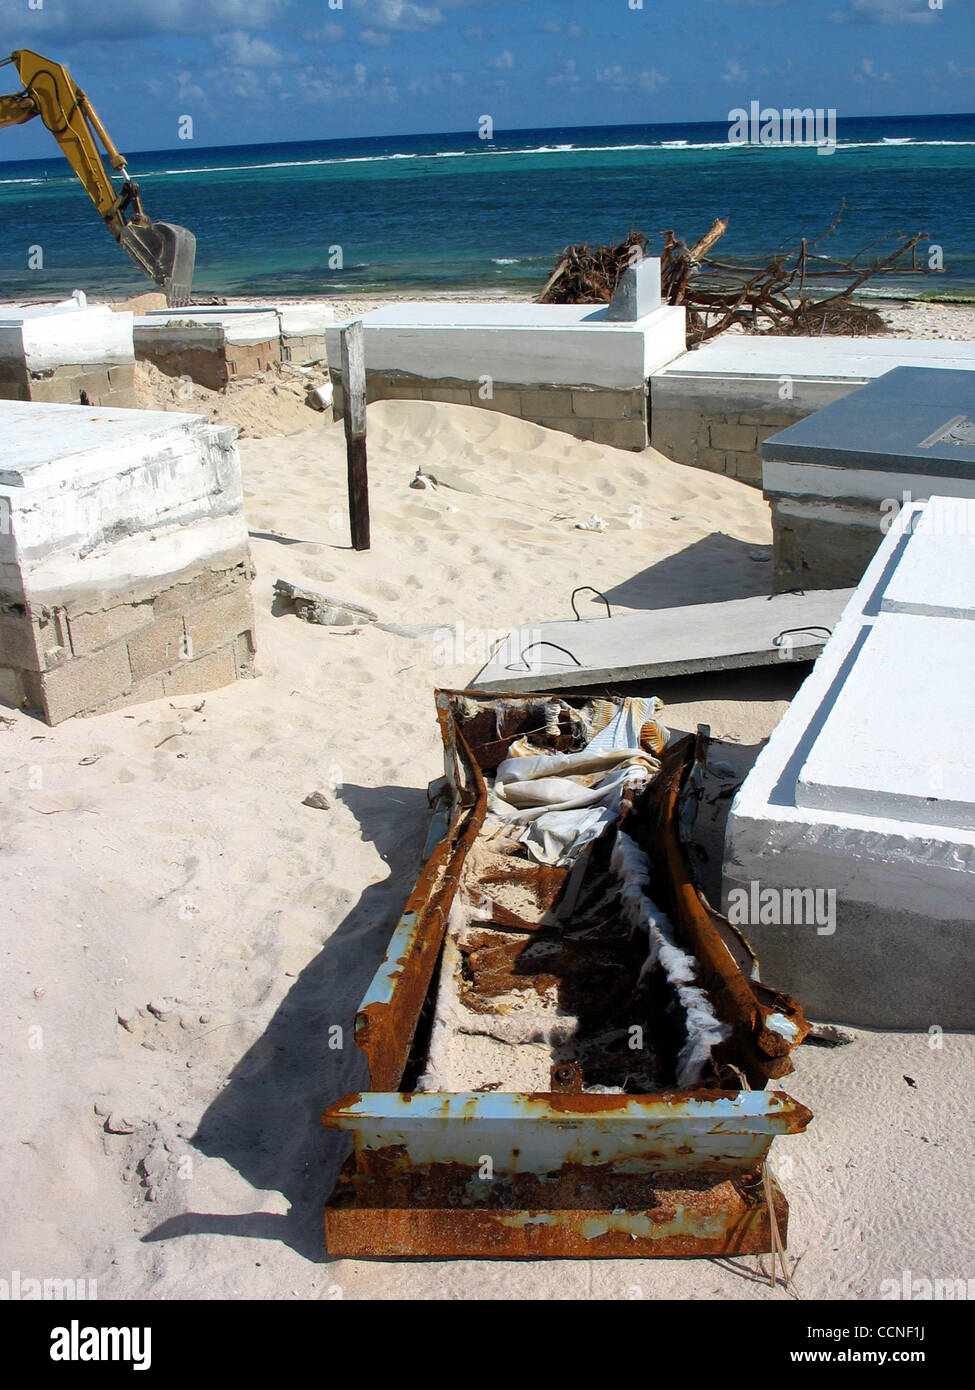 East End, Grand Cayman -- urna en el cementerio junto al mar abierto fue arrancado por el huracán Iván -- Se desconoce el paradero de los ocupantes. Fotografía por Cheryl Blaccurby Foto de stock